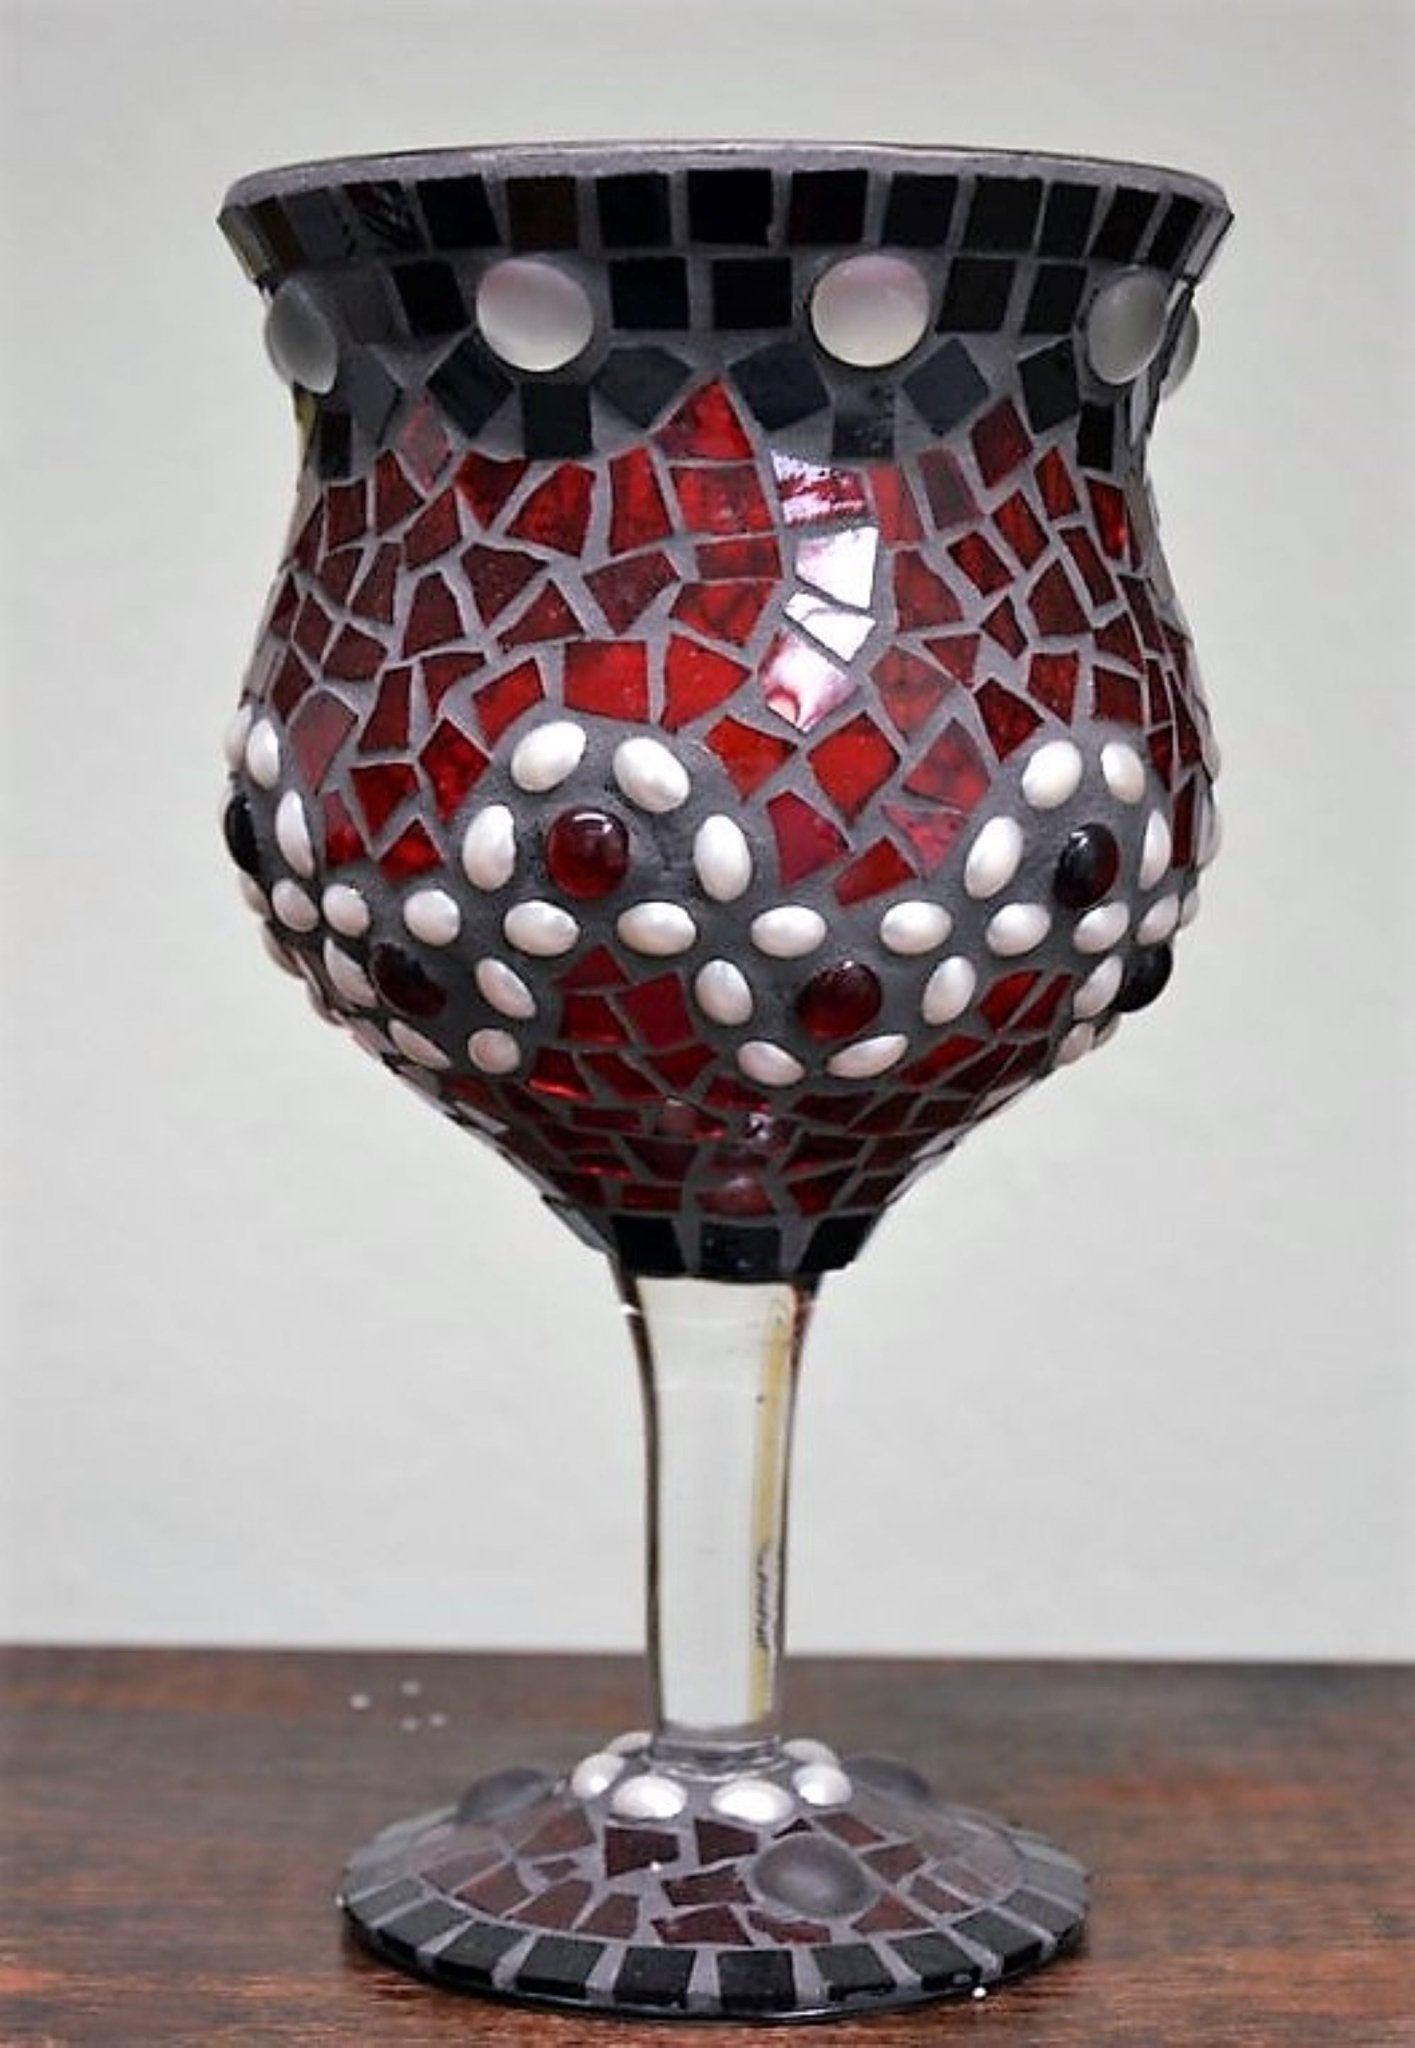 Handgemachtes Windlicht Perlenwelle rot schwarz weiß 25 cm hoch - Mosaikkasten aus alt mach neu dekoidee